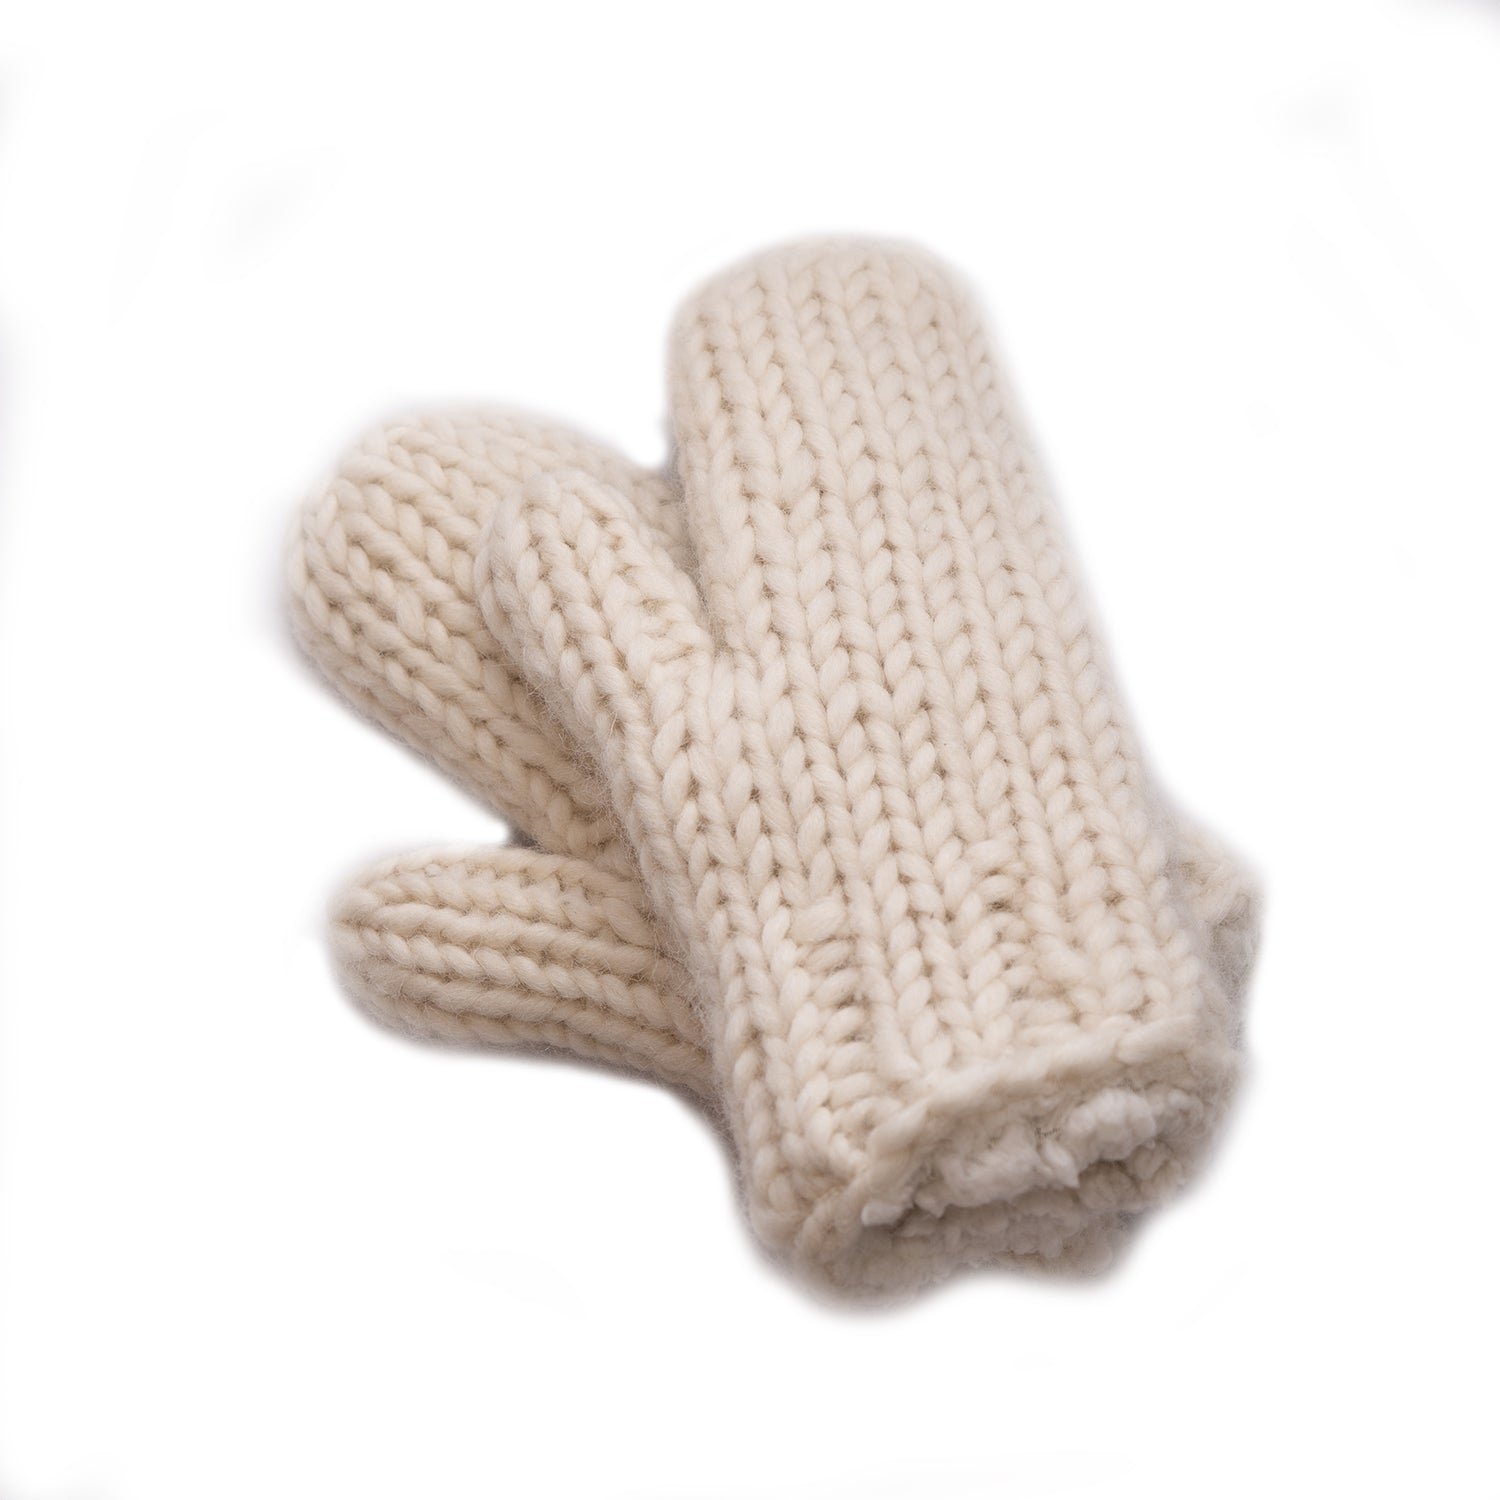 Hand Knit Wool, Sherpa Fleece Lined Mittens